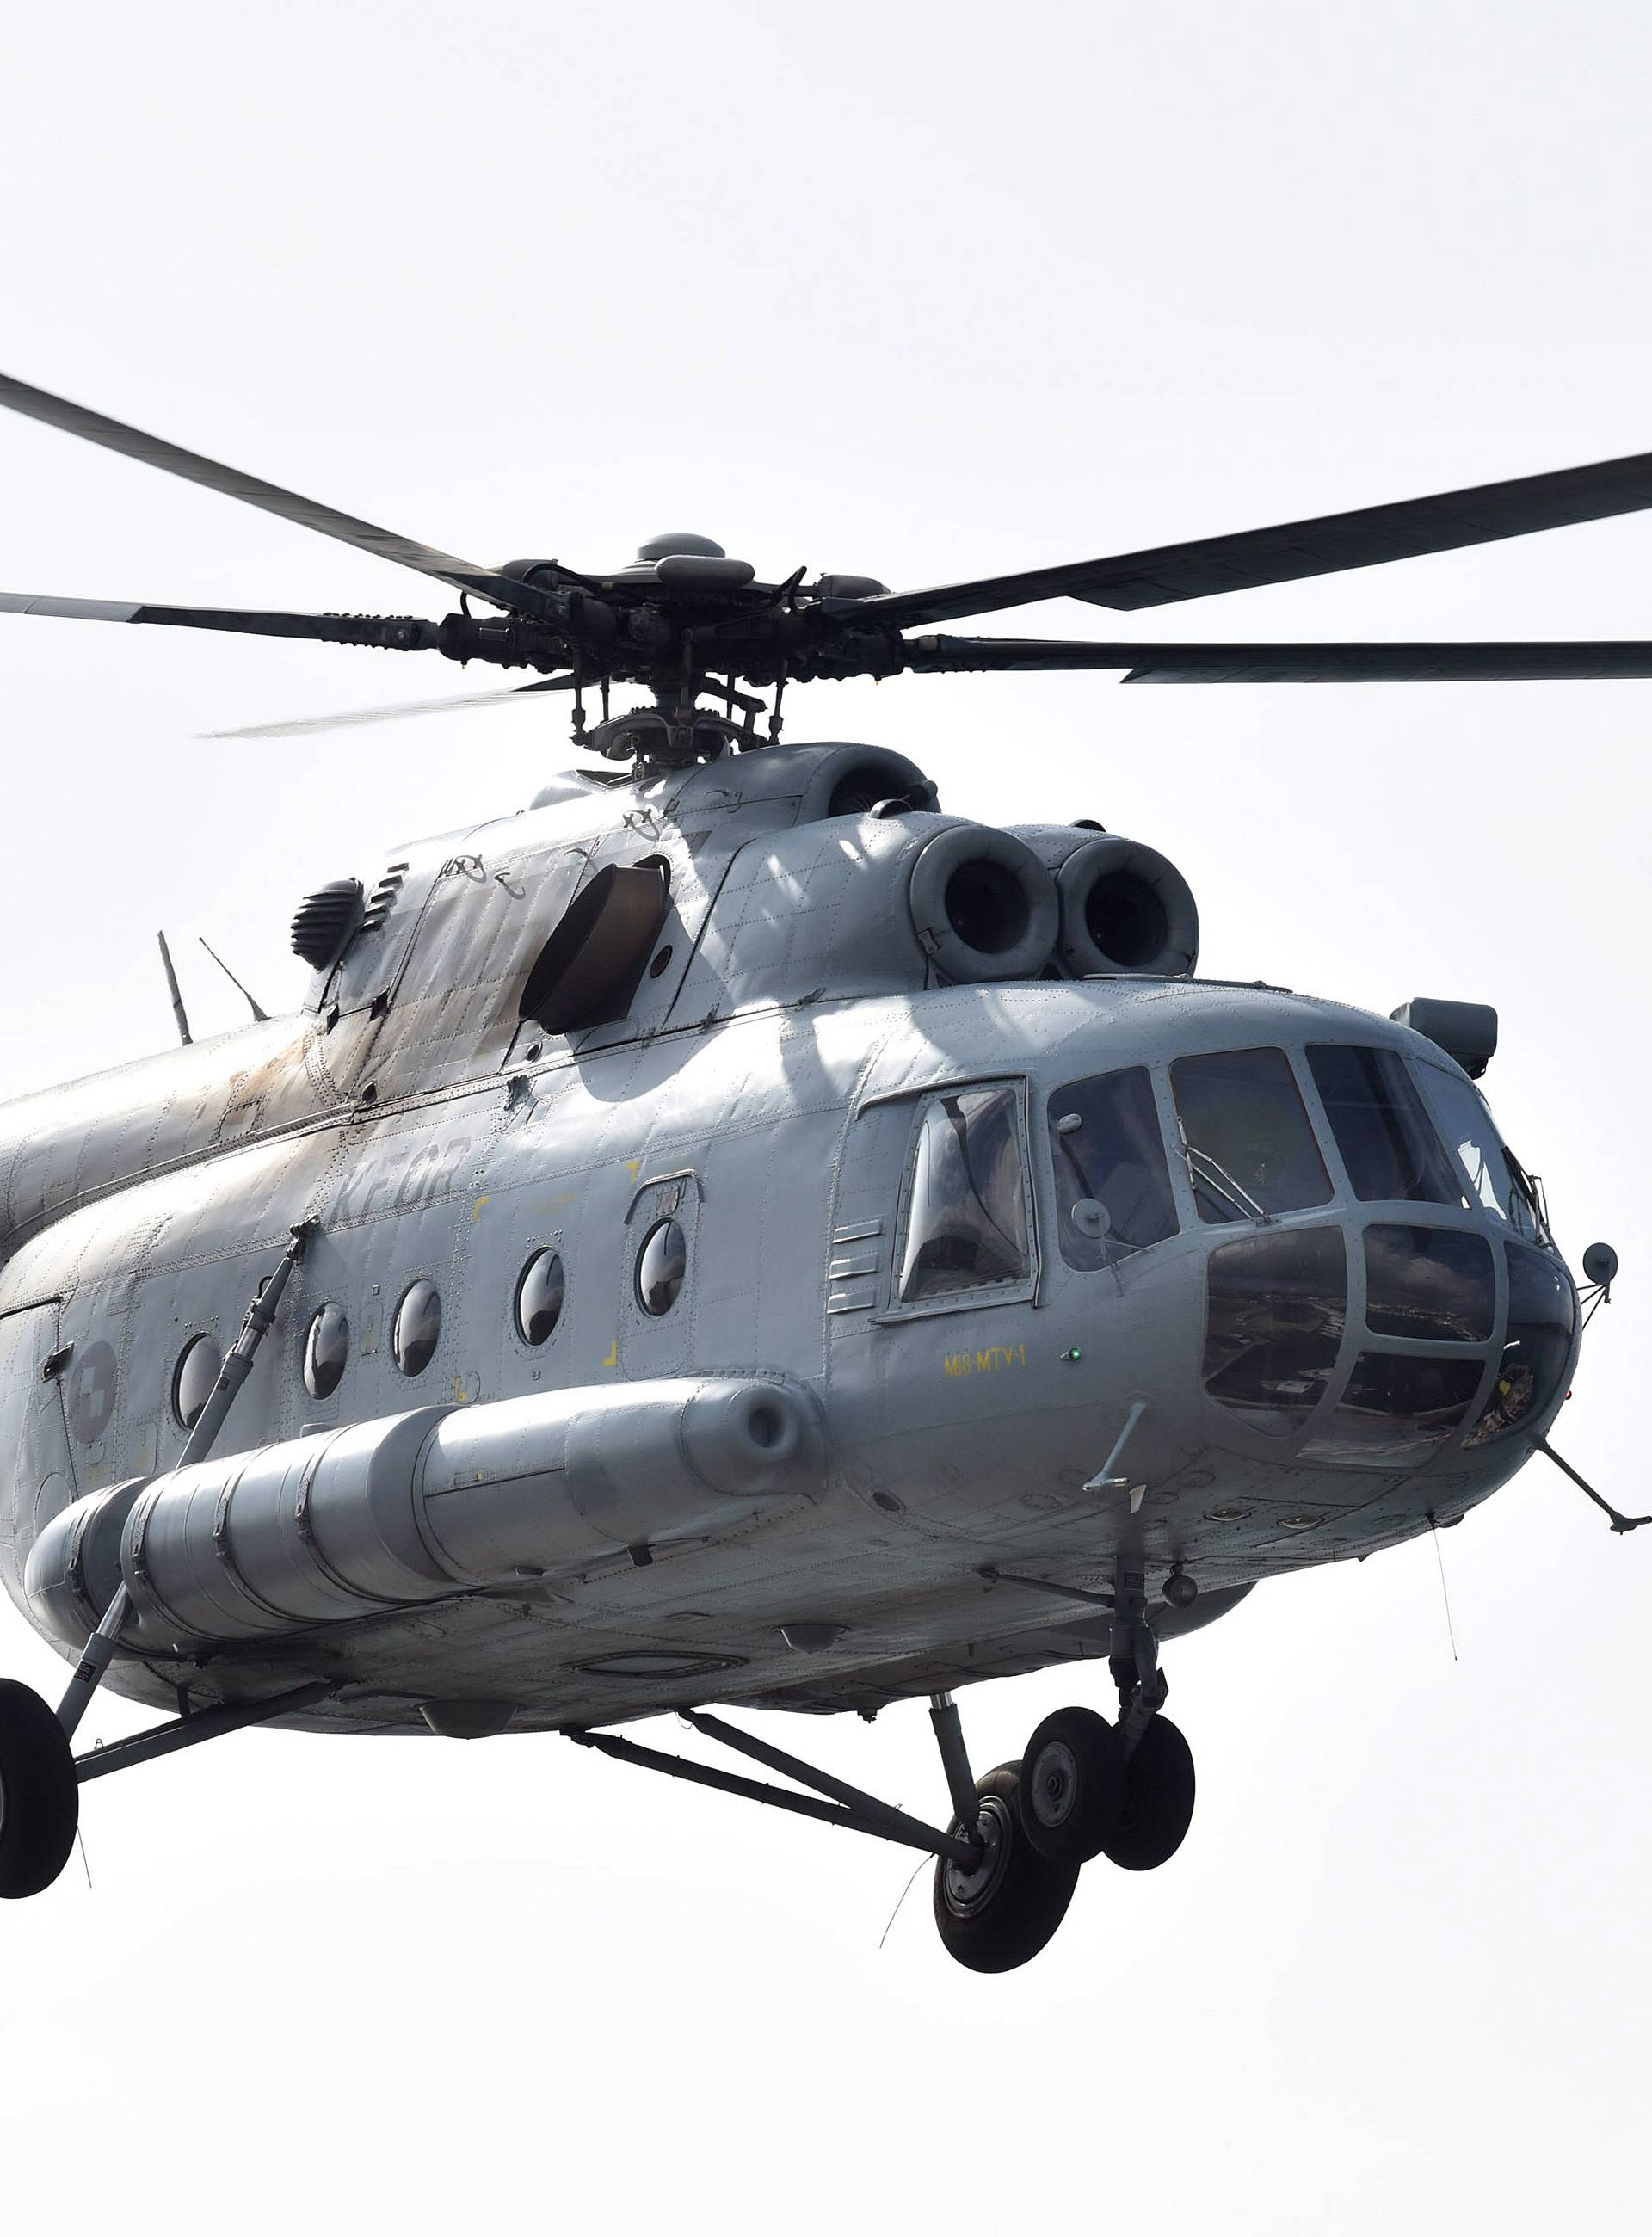 Pao helikopter kod Zlarina: Iz mora su izvukli tijelo pilota